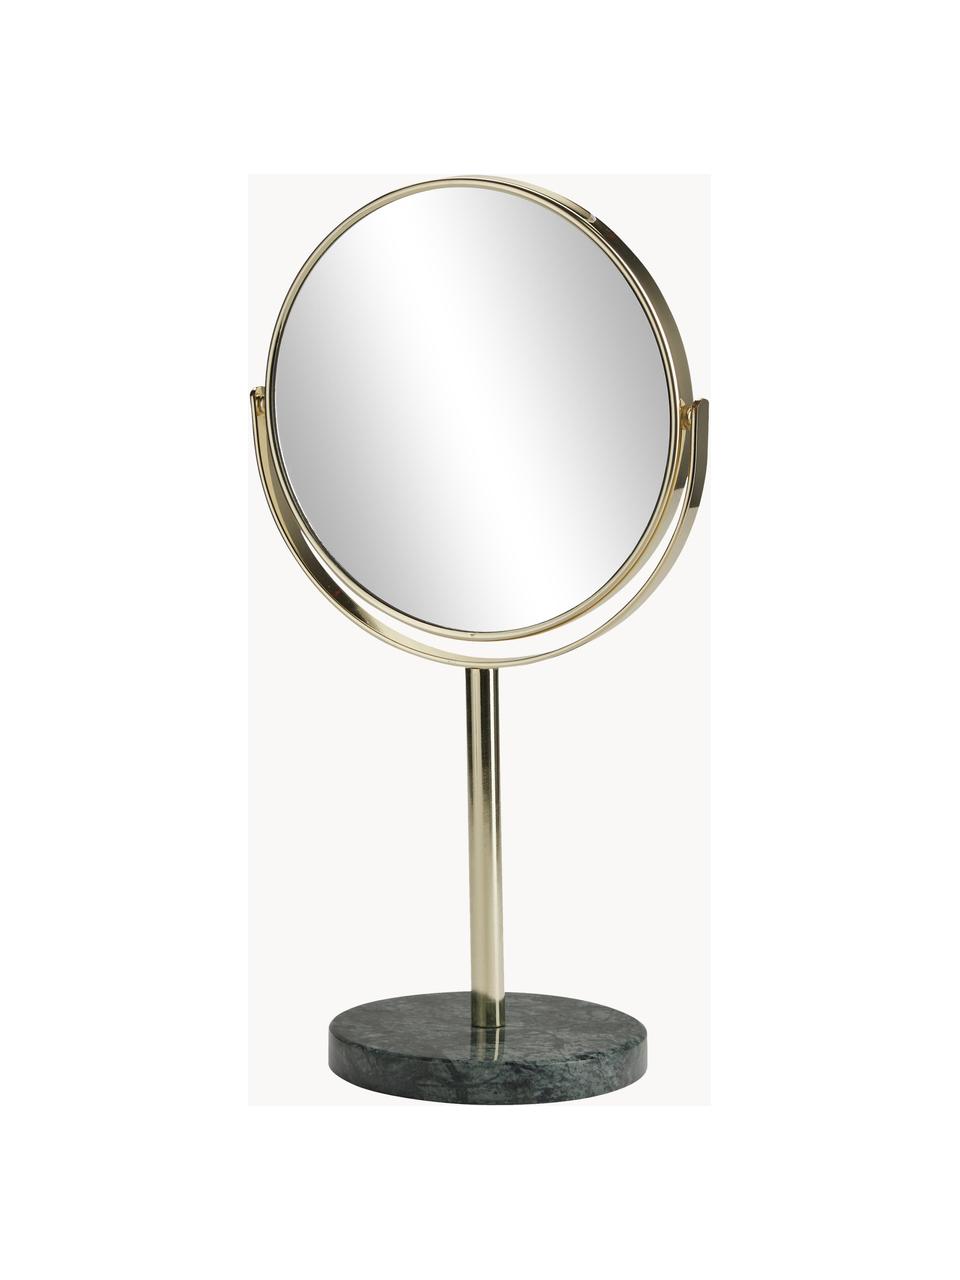 Runder Kosmetikspiegel Ramona mit Vergrößerung, Rahmen: Metall, Fuß: Marmor, Spiegelfläche: Spiegelglas, Goldfarben, Grün, marmoriert, Ø 20 x H 34 cm